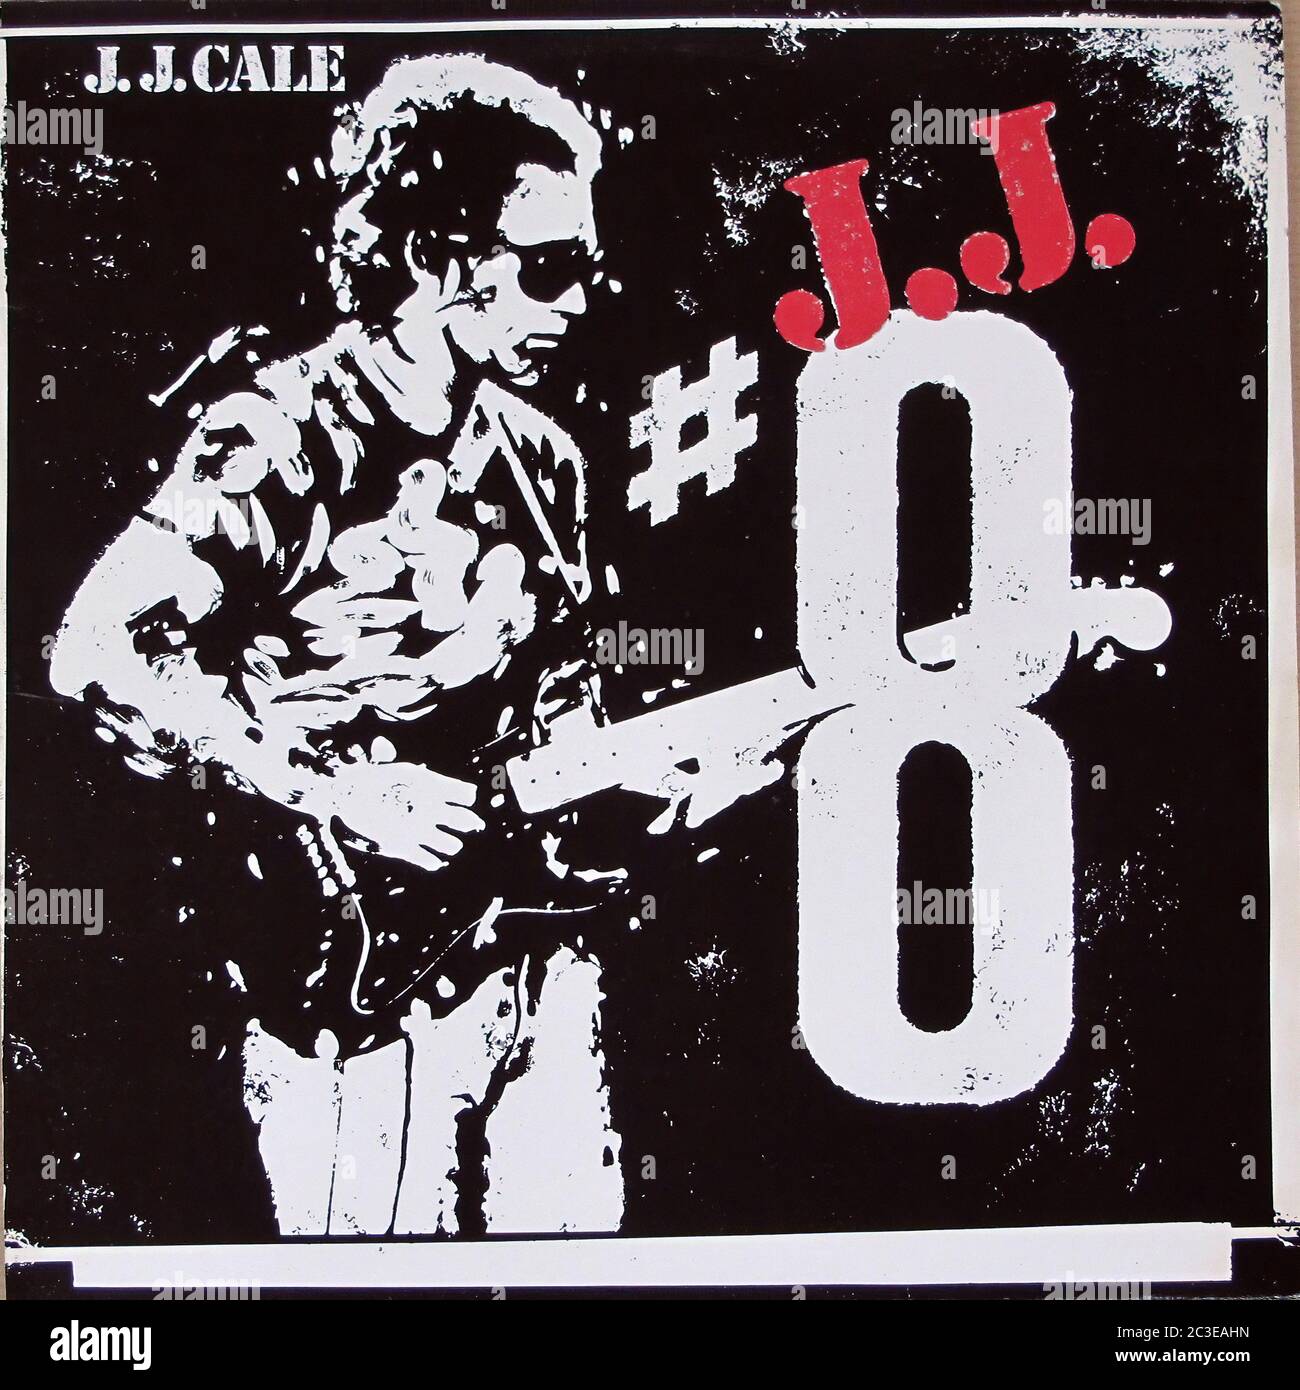 J.J. CALE 8 EIGHT  - Vintage 12'' LP vinyl Cover Stock Photo